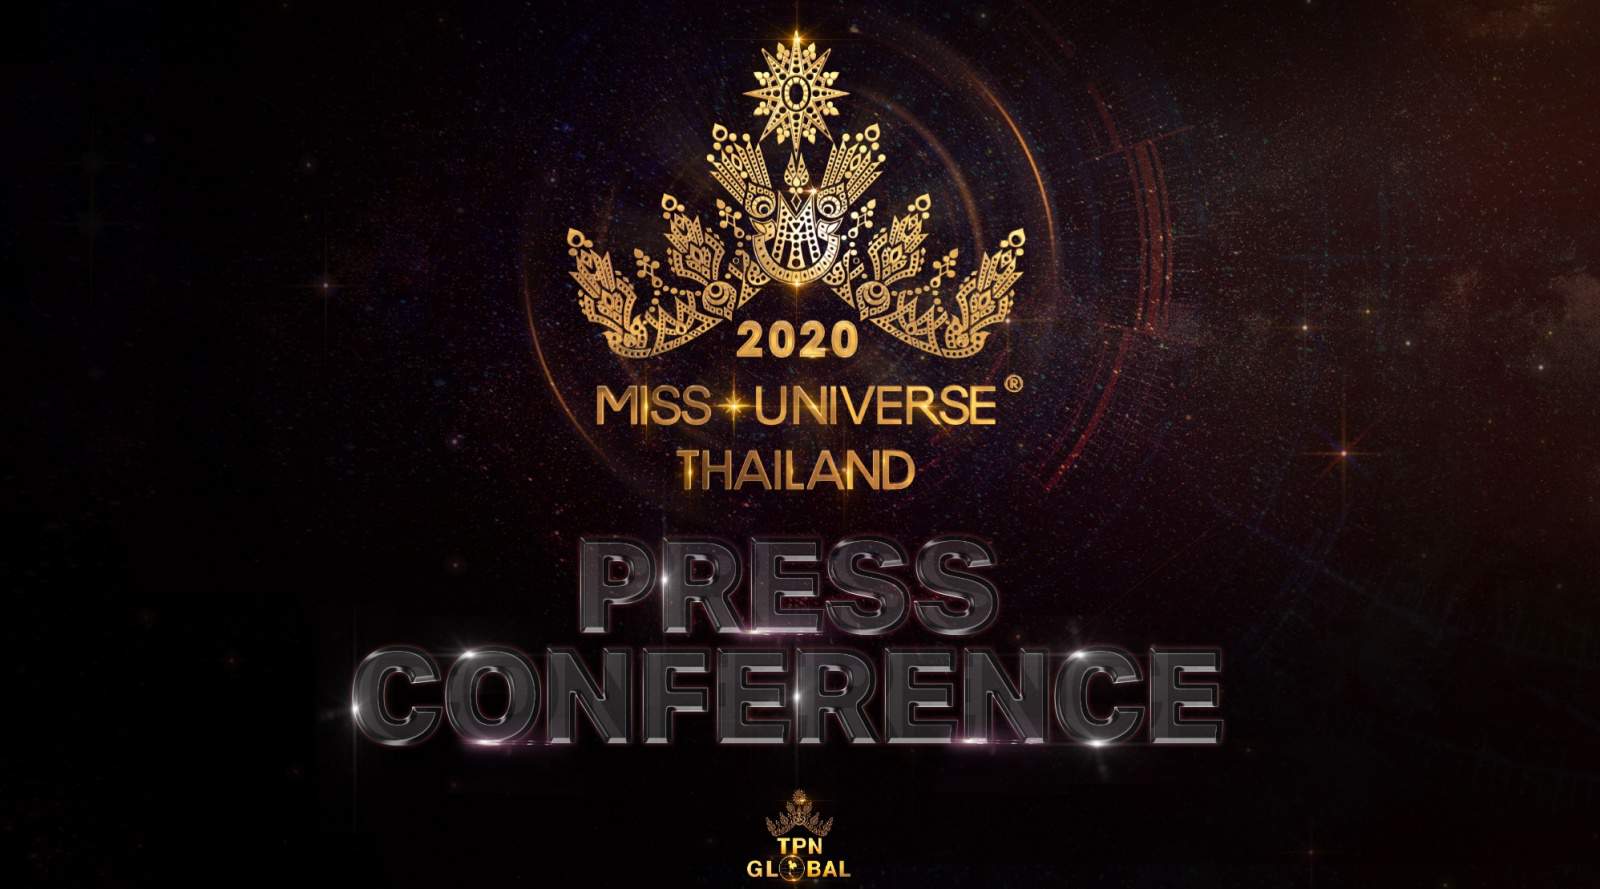 เปิดรับสมัครแล้ว!! Miss Universe Thailand 2020 เวทีนางงามพลิกโฉมในยุคโควิด